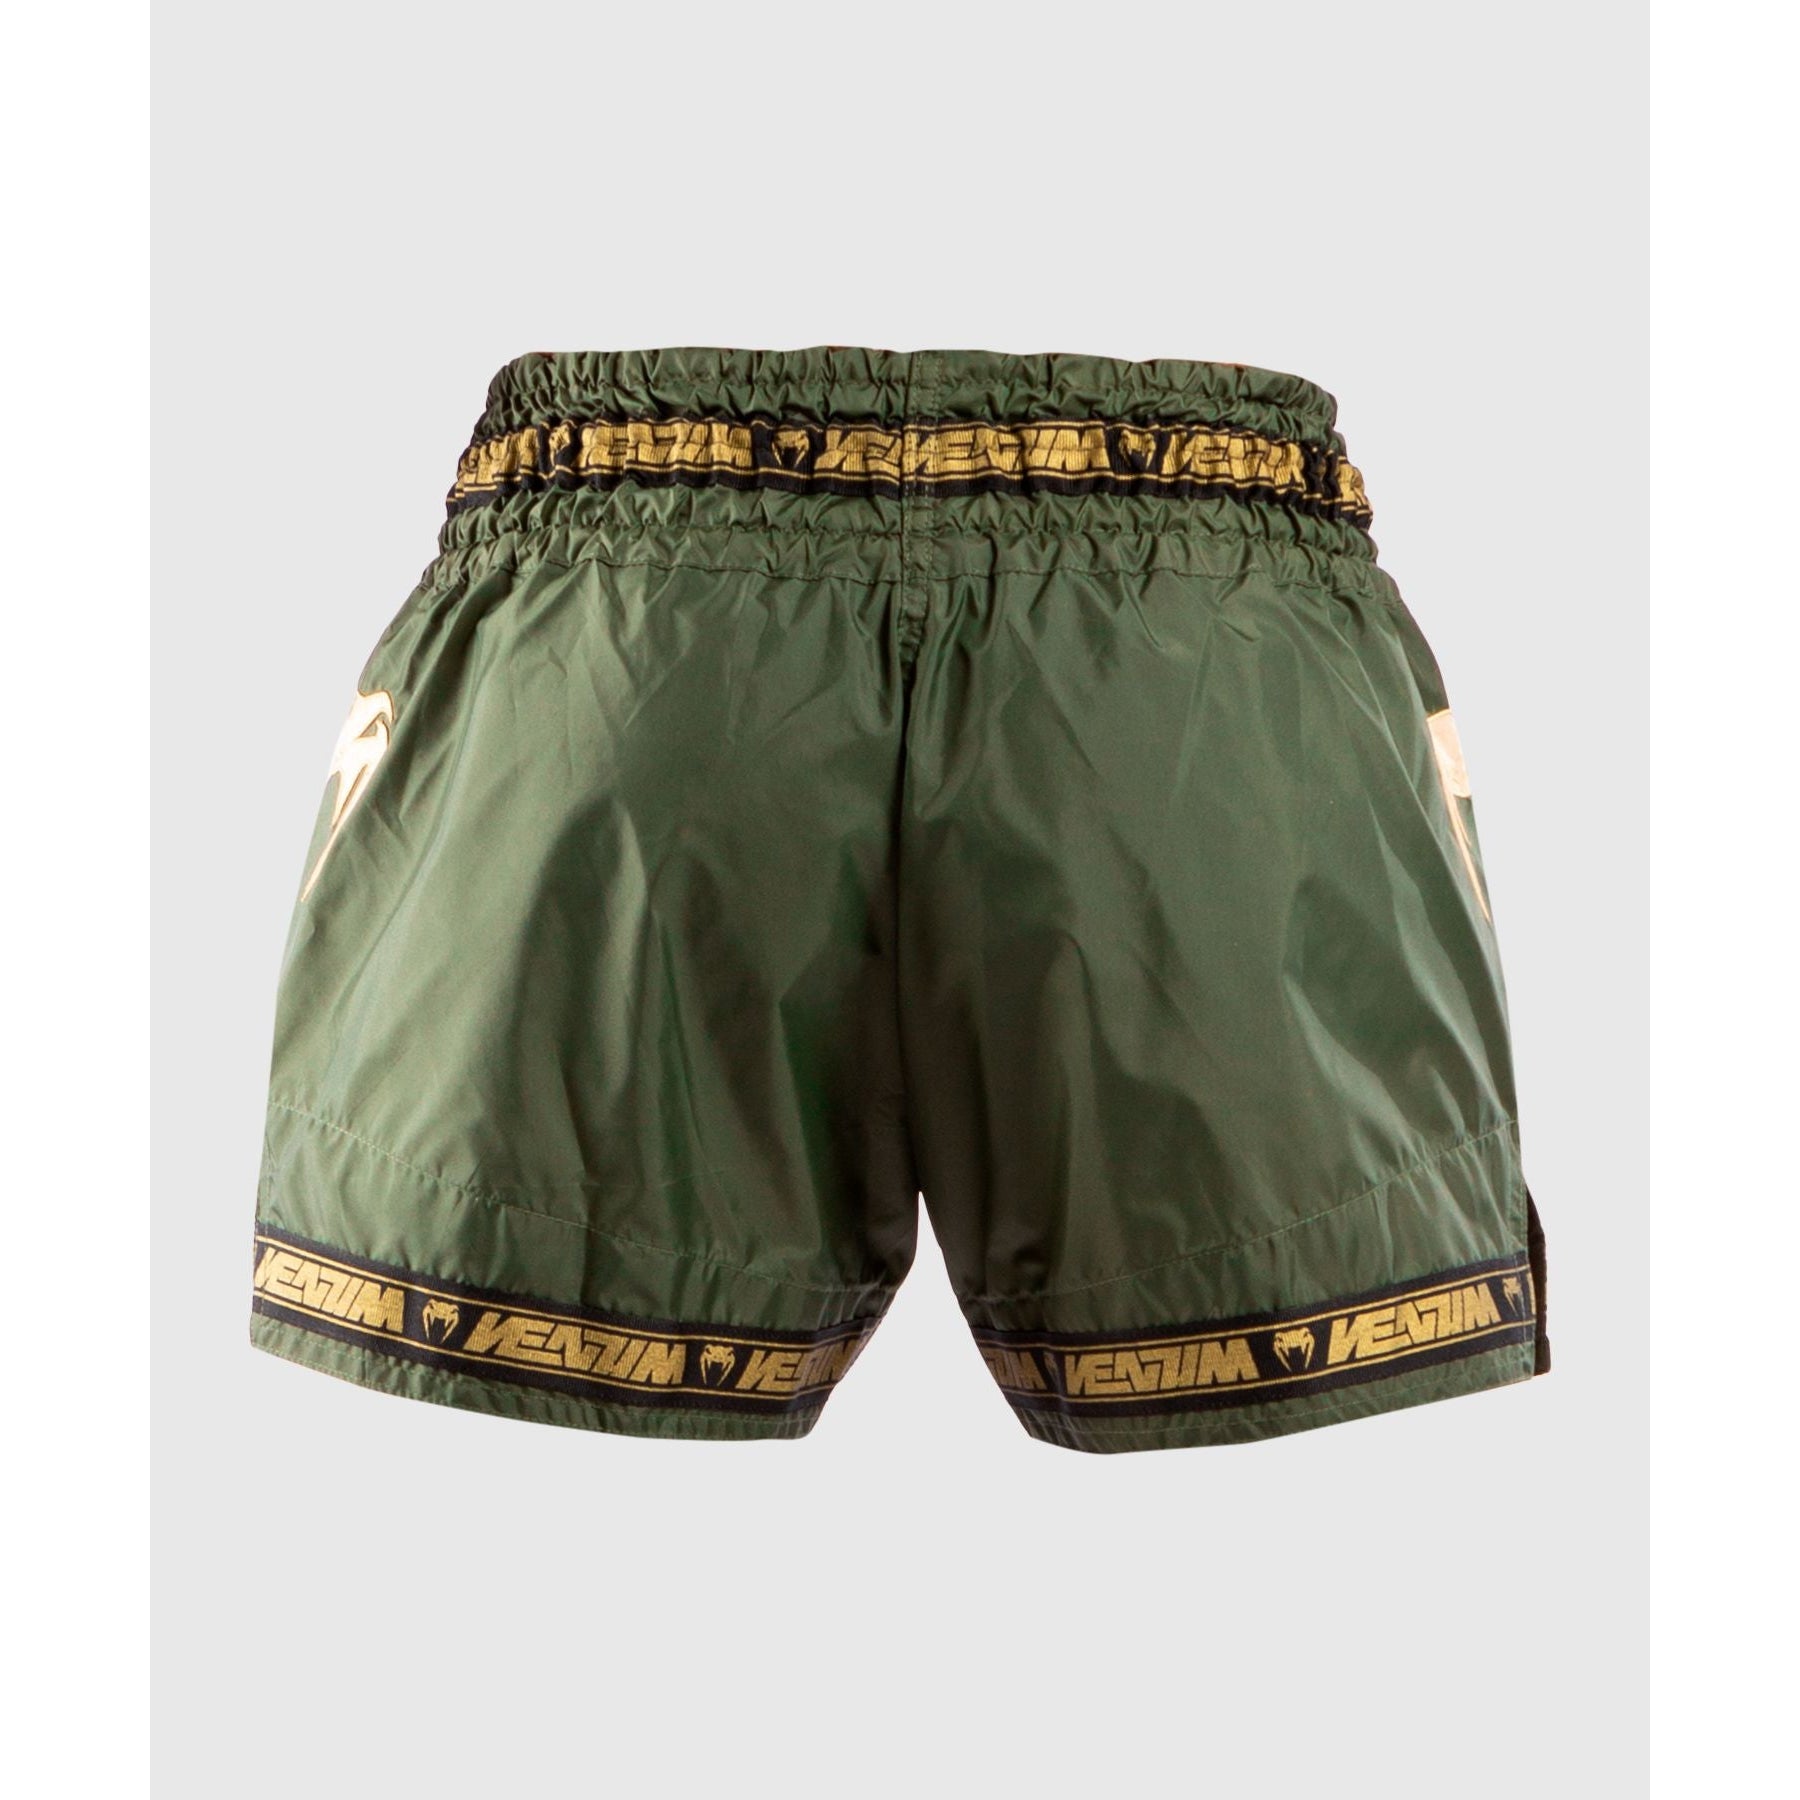 Parachute Muay Thai Shorts - Venum